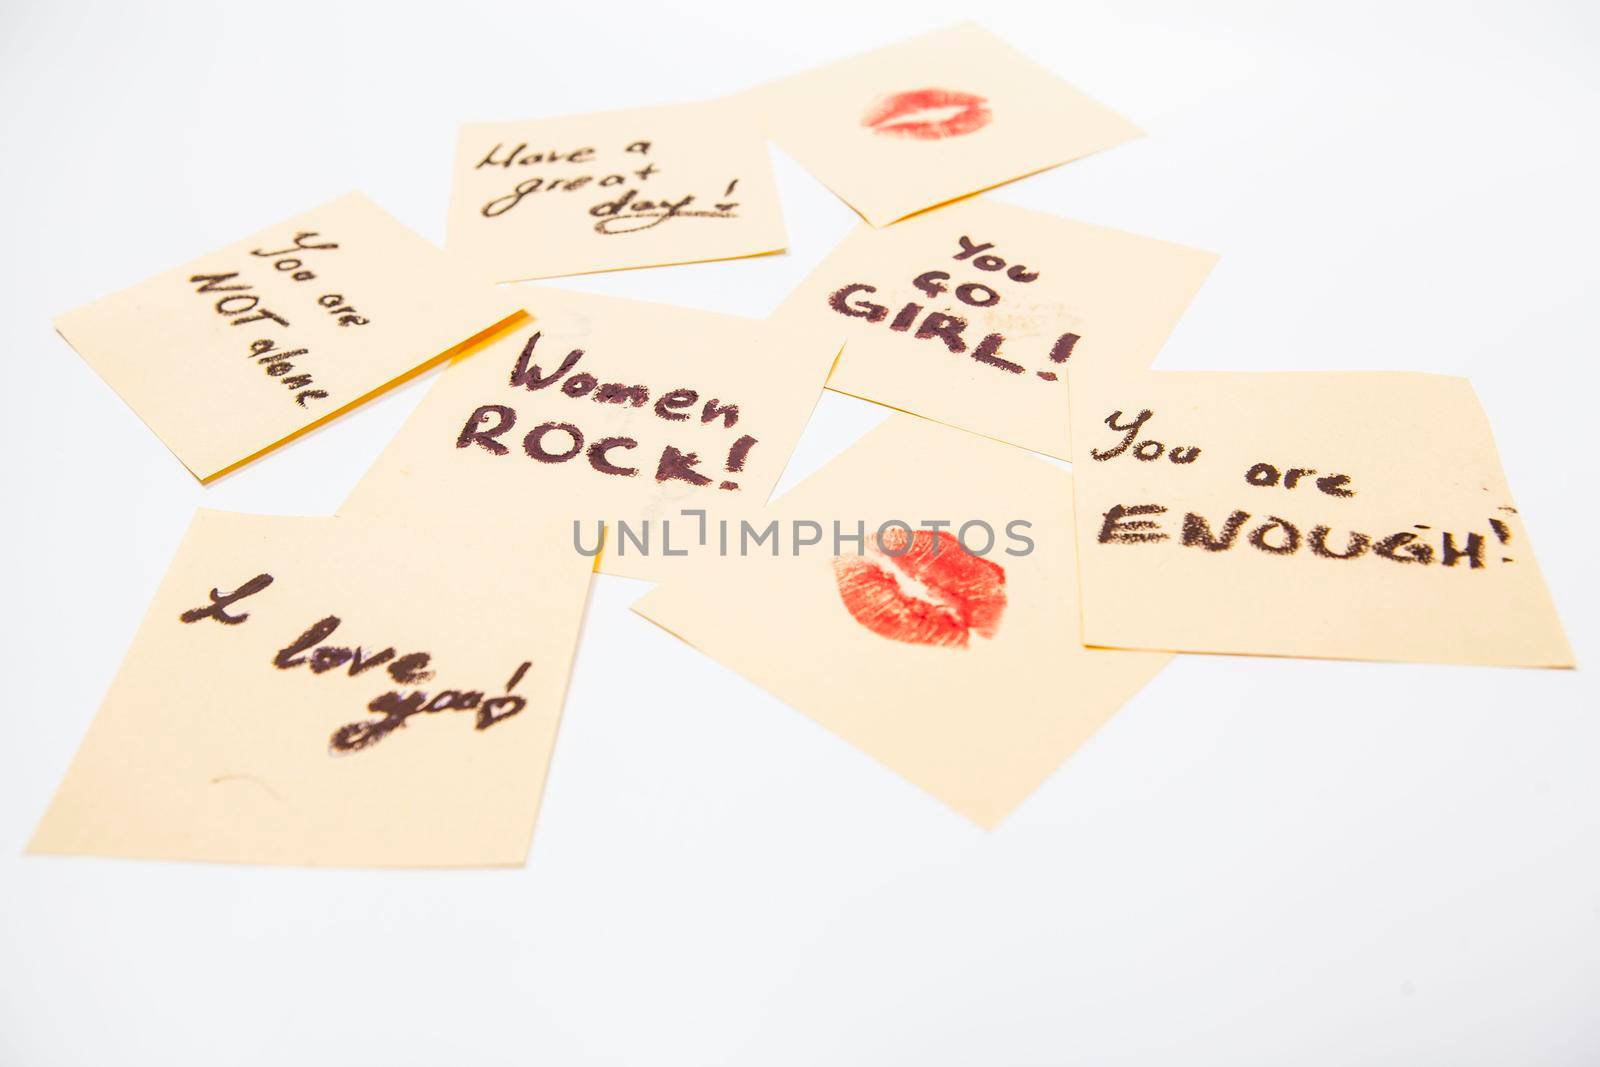 Handwritten inspirational notes empowering women